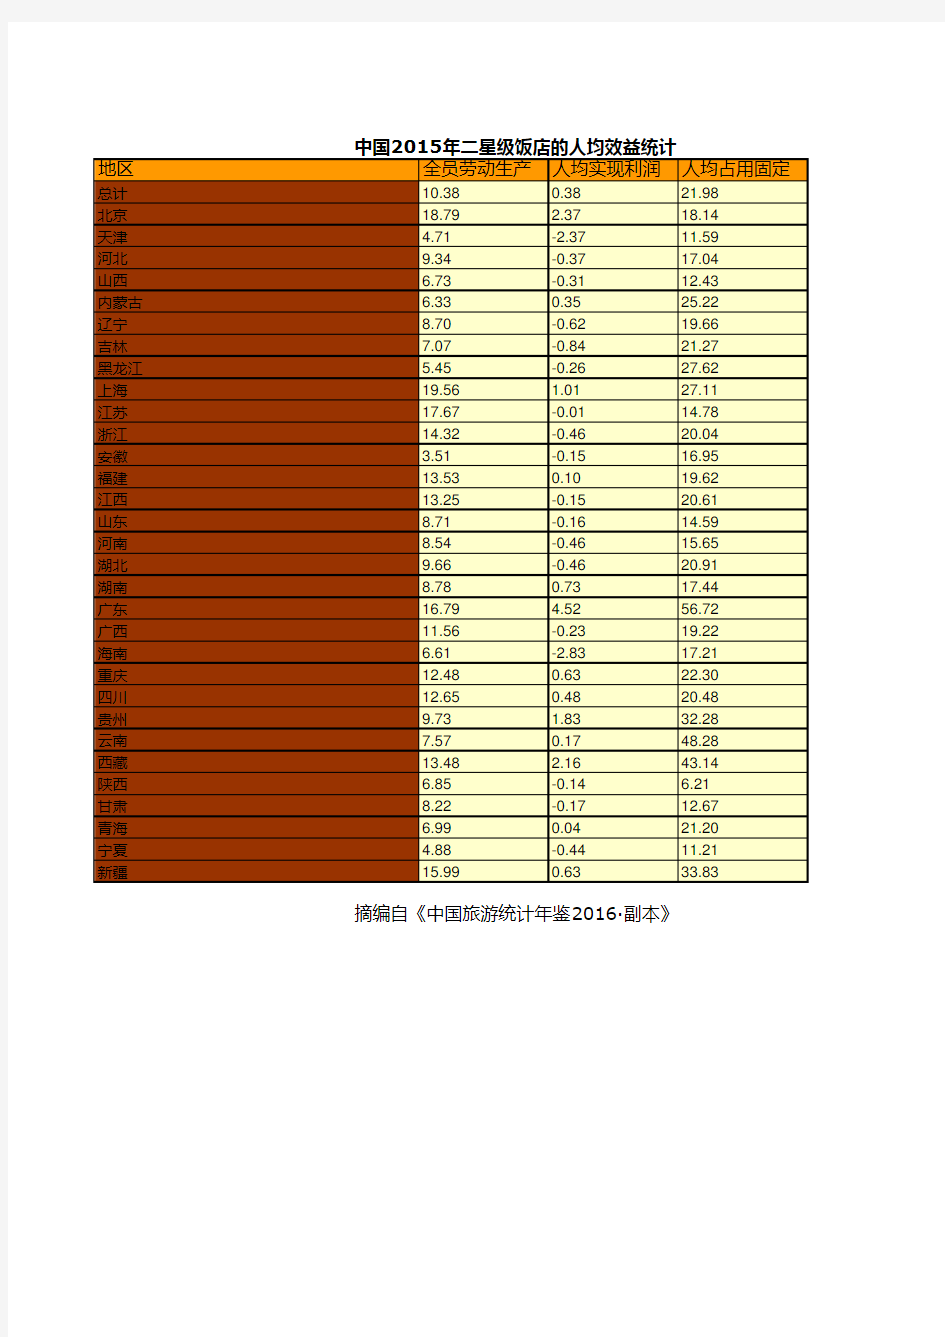 中国旅游统计年鉴2016全国各地指标：中国2015年二星级饭店的人均效益统计